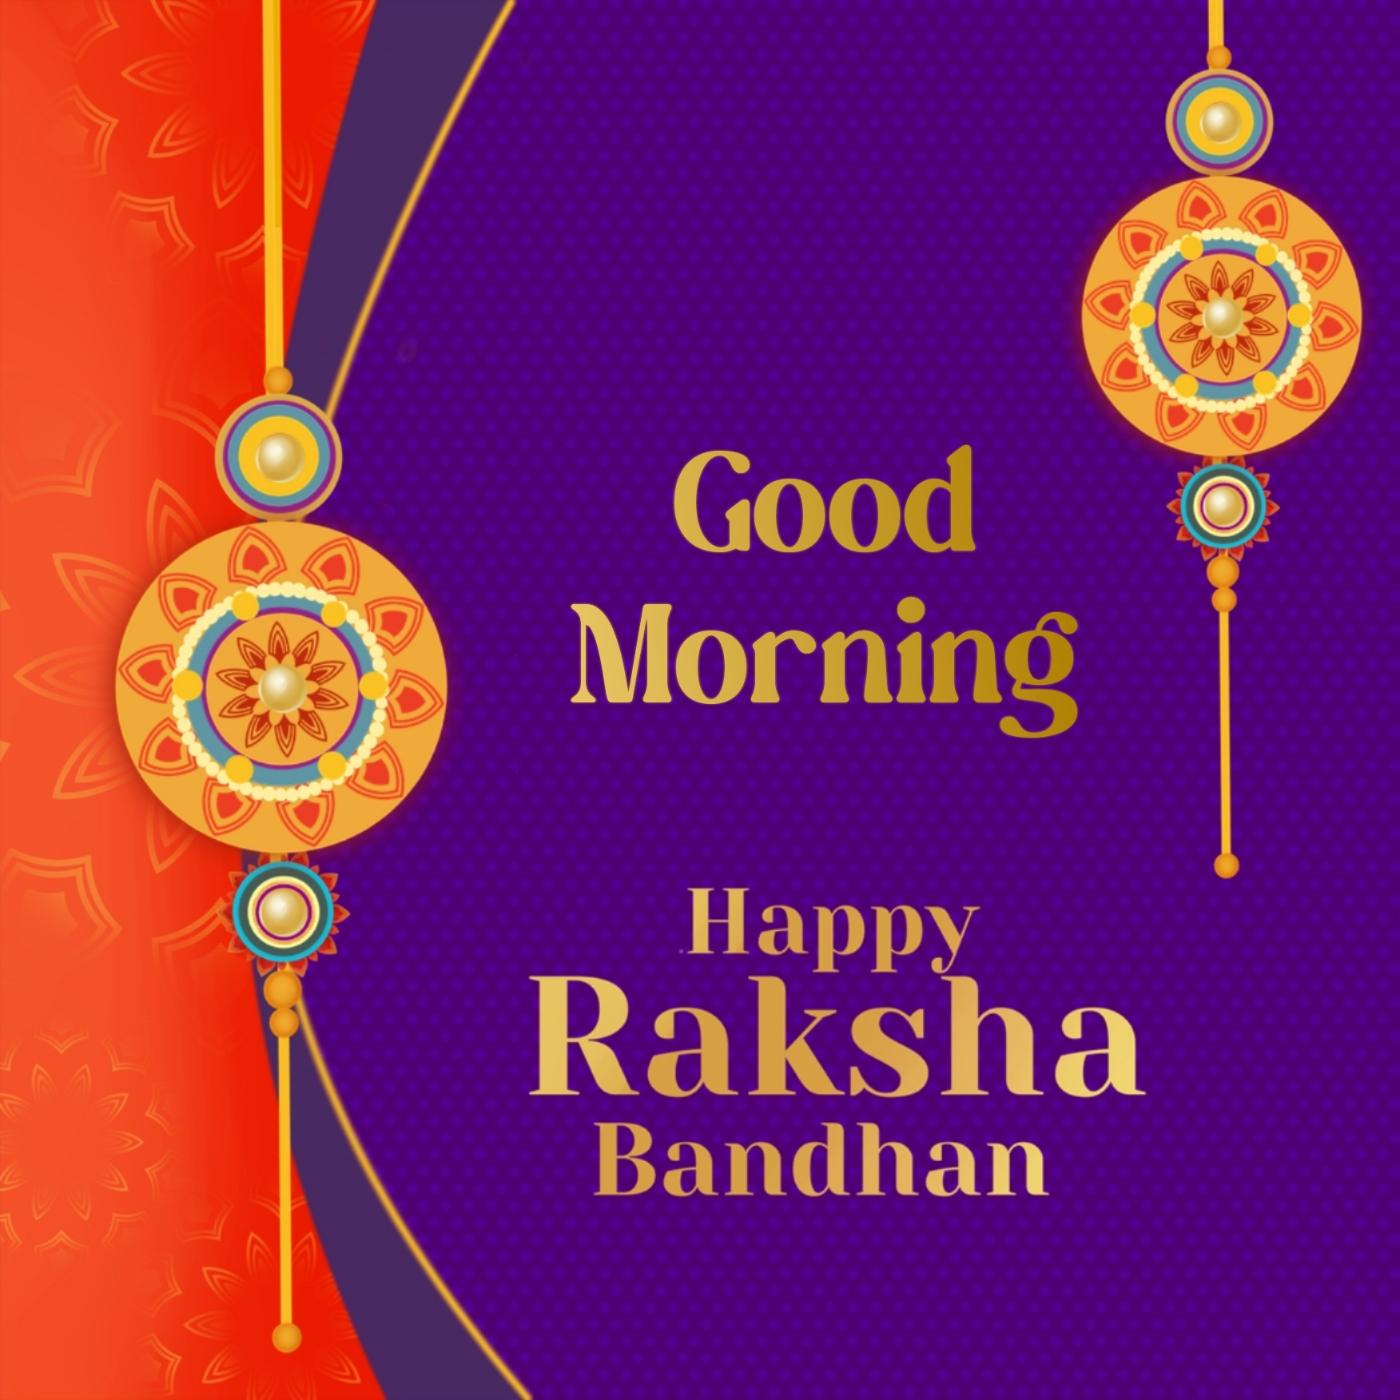 Happy Raksha Bandhan Good Morning Images